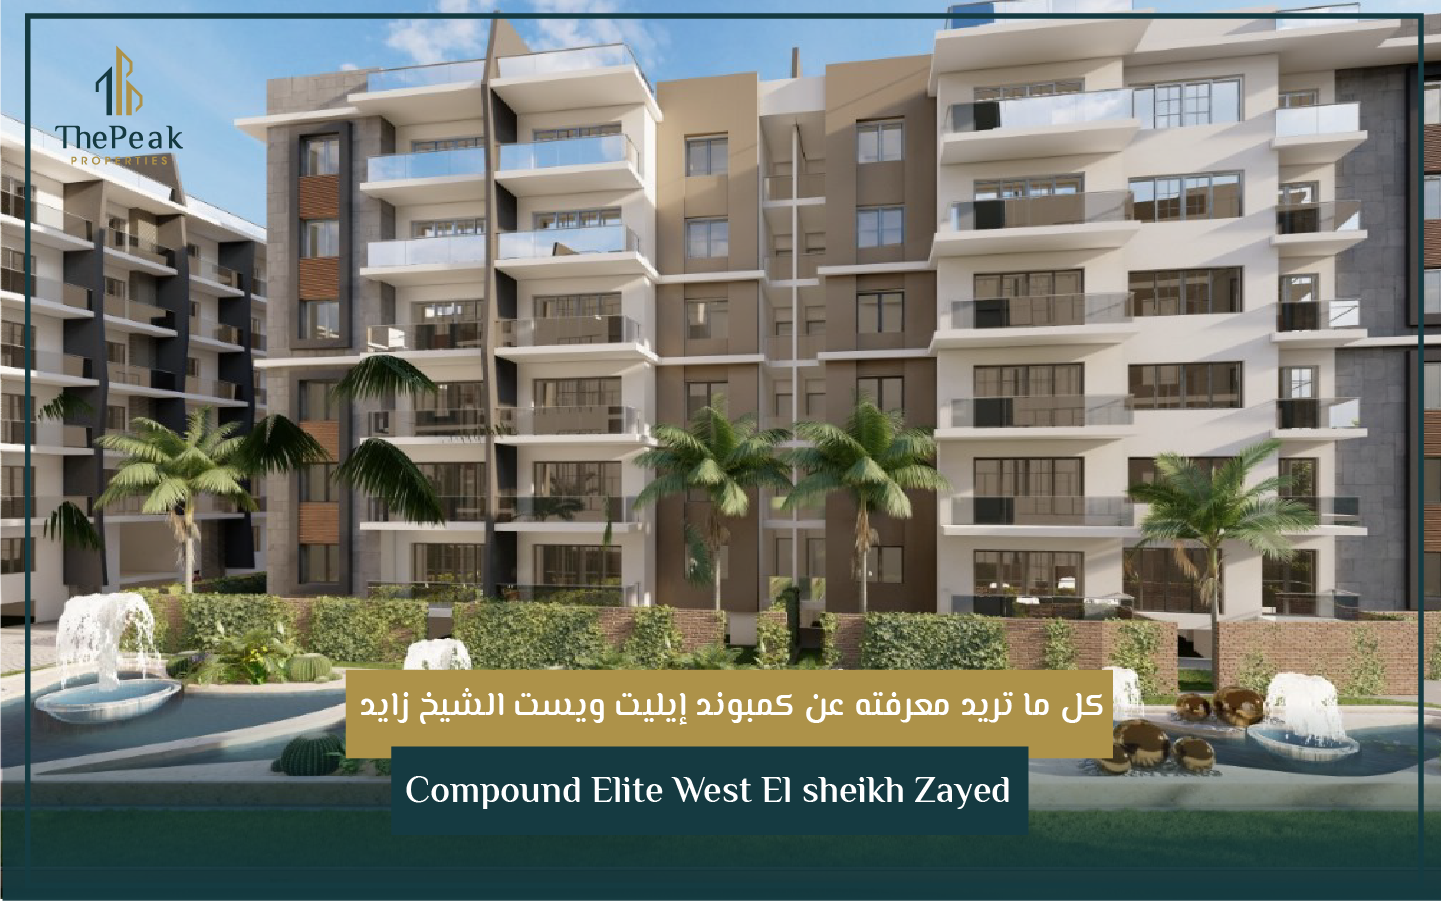 بنتهاوس للبيع بالتقسيط في الشيخ زايد  مساحة 251 متر + 123 متر  مقدم 15 % و تقسيط يصل إلي 8 سنوات  في مشروع Compound Elite West El sheikh Zayed | THE PEAK PROPERTIES